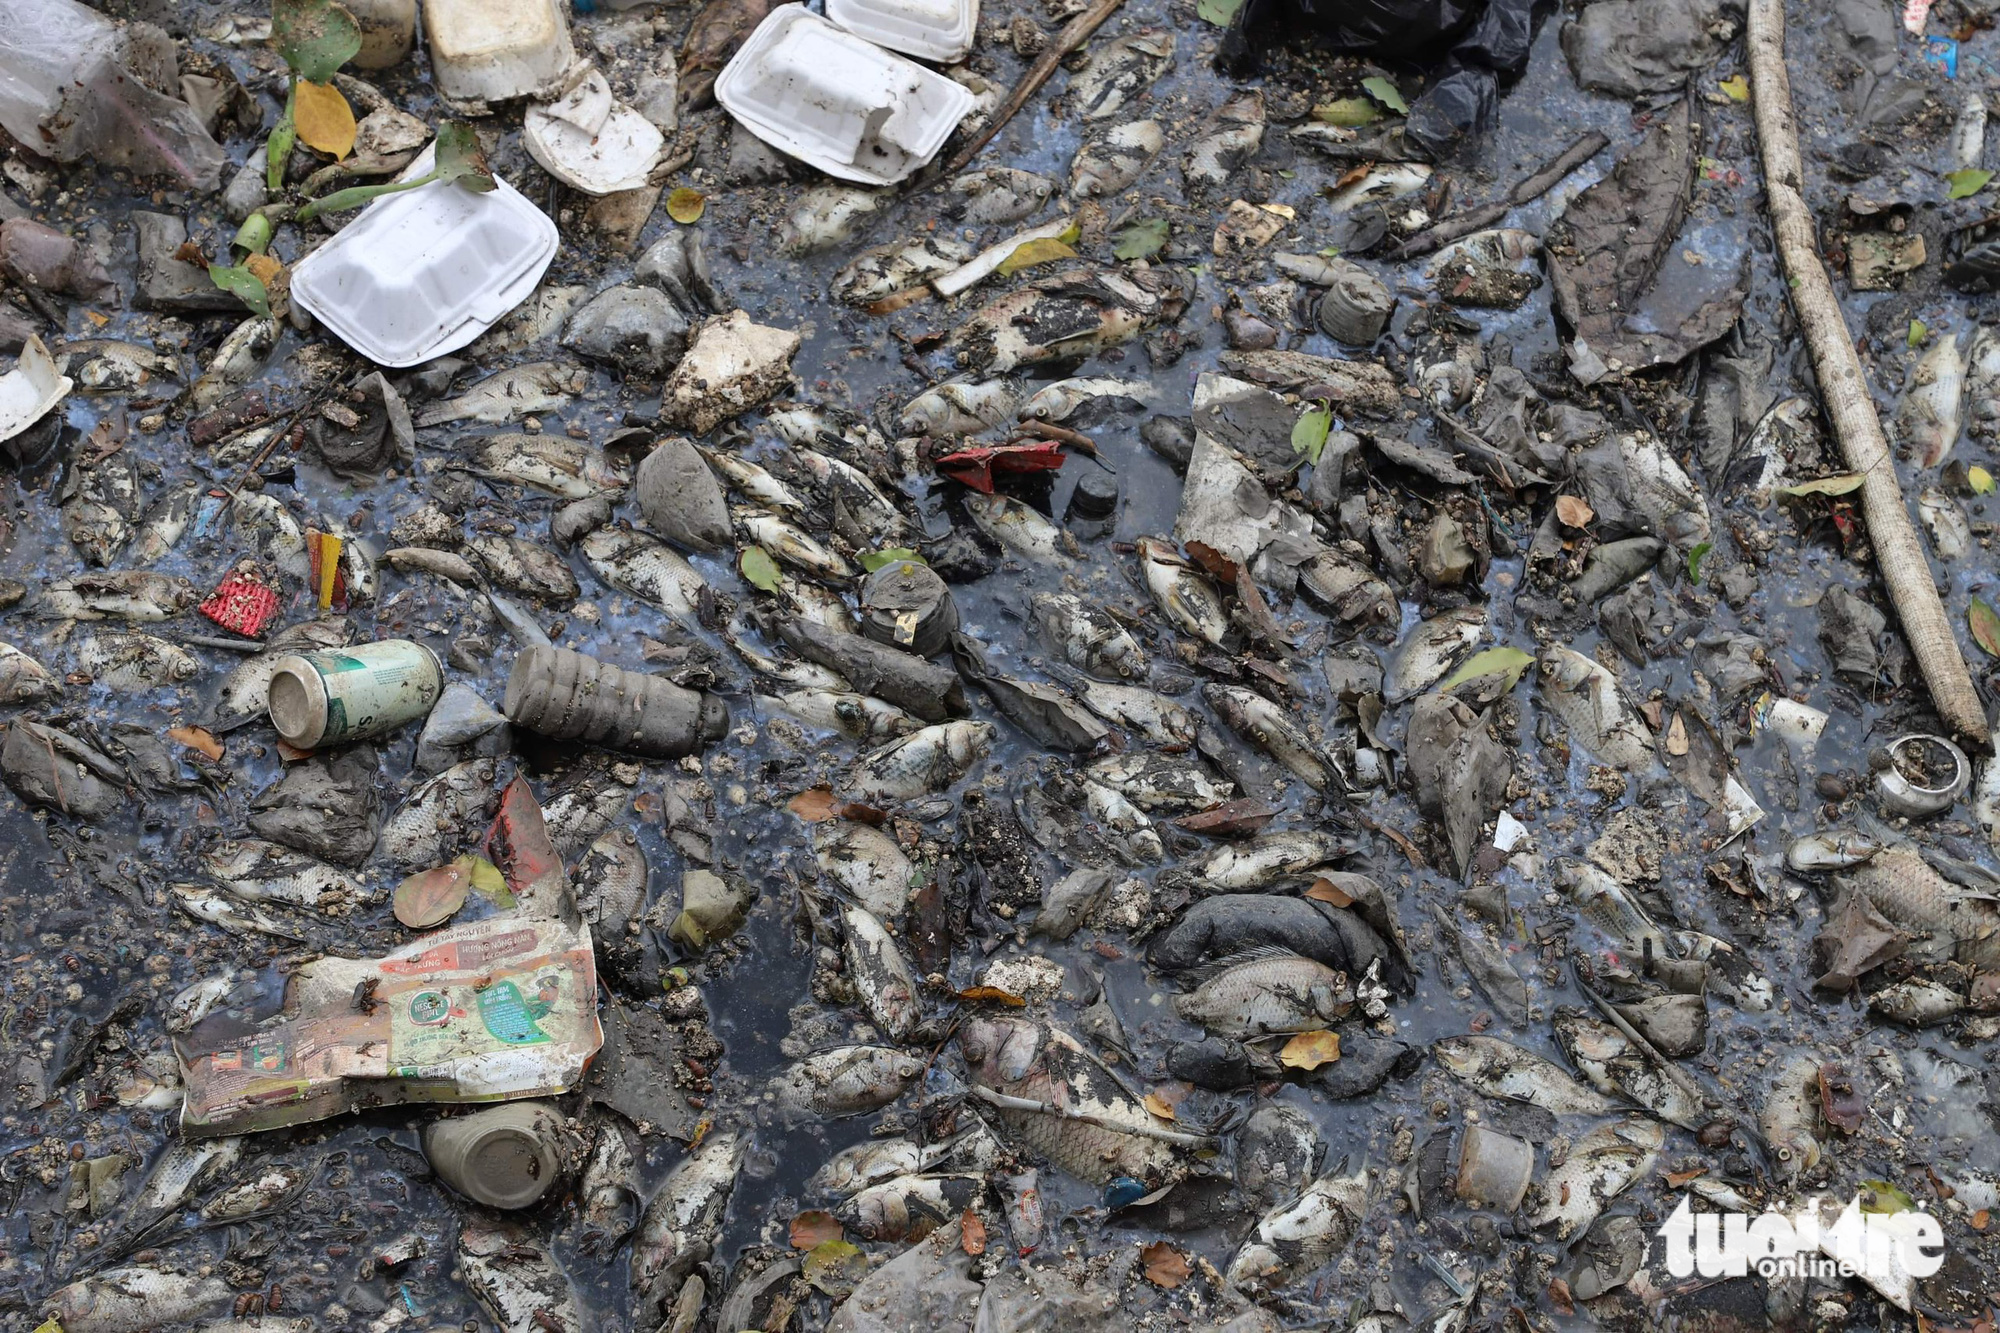 Sau mưa, cá chết, rác nổi lềnh bềnh trên kênh Nhiêu Lộc - Thị Nghè - Ảnh 7.